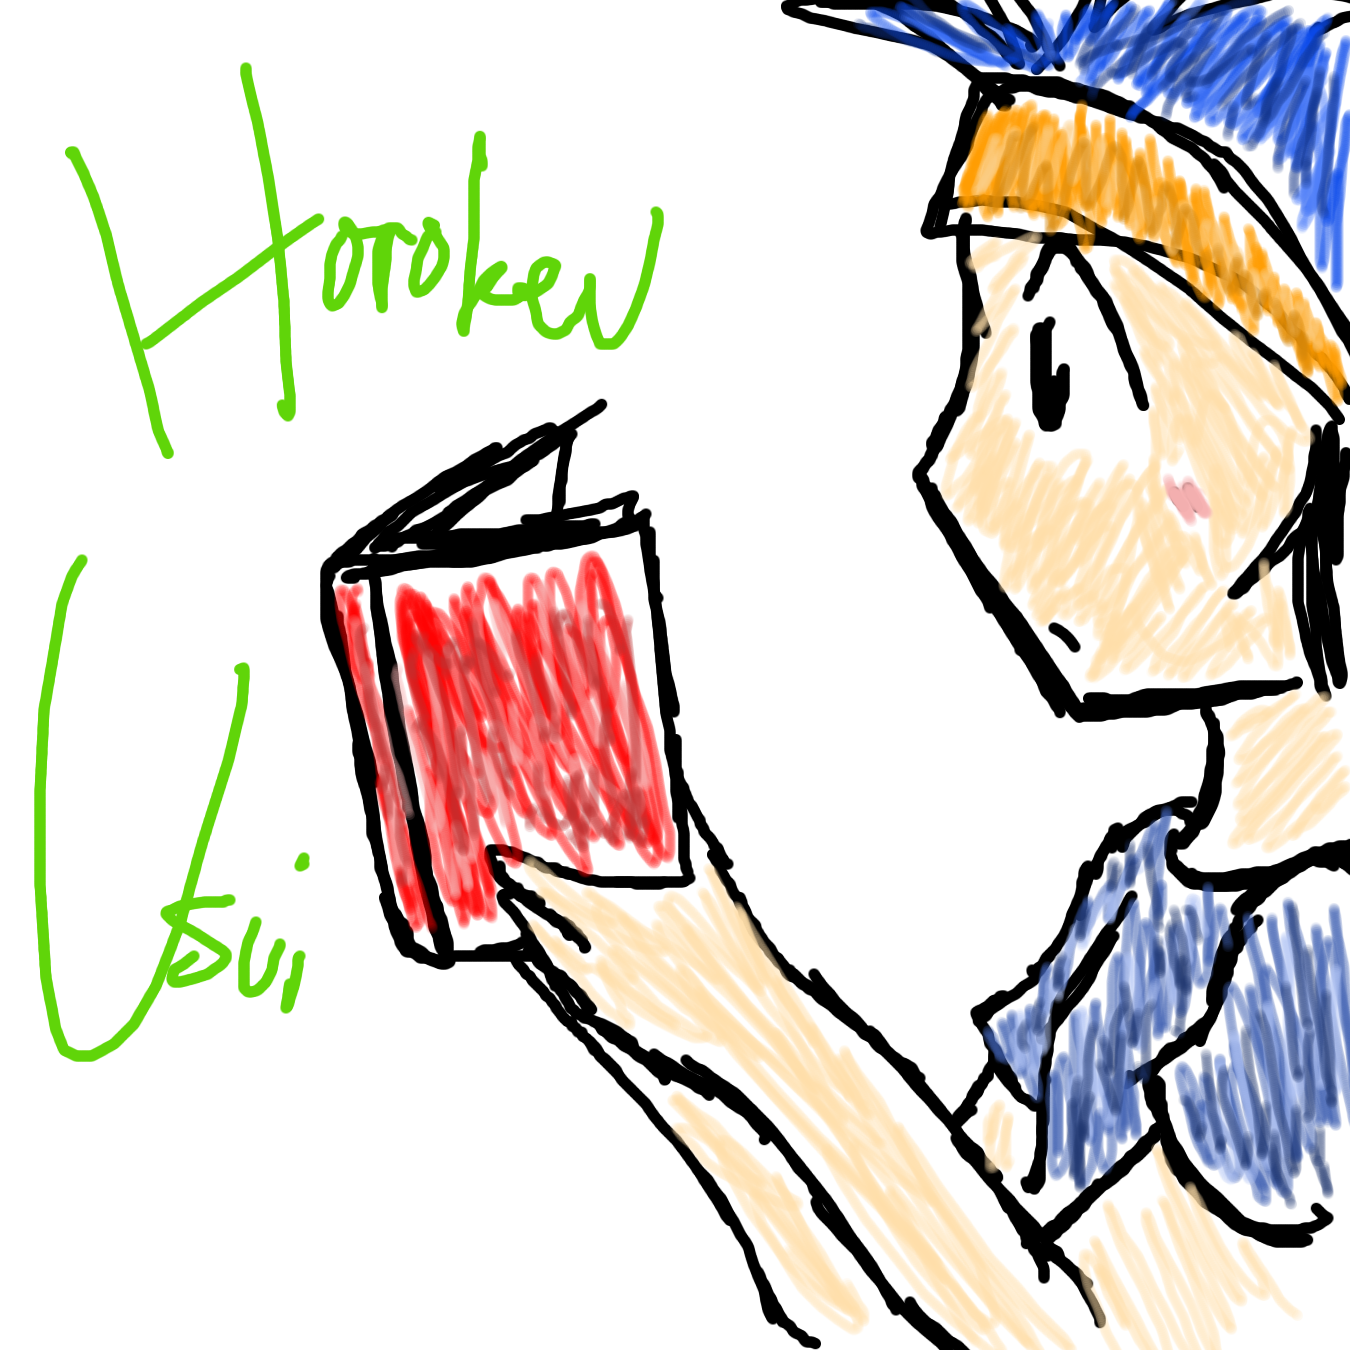 Horo Reading by kamoku_hito